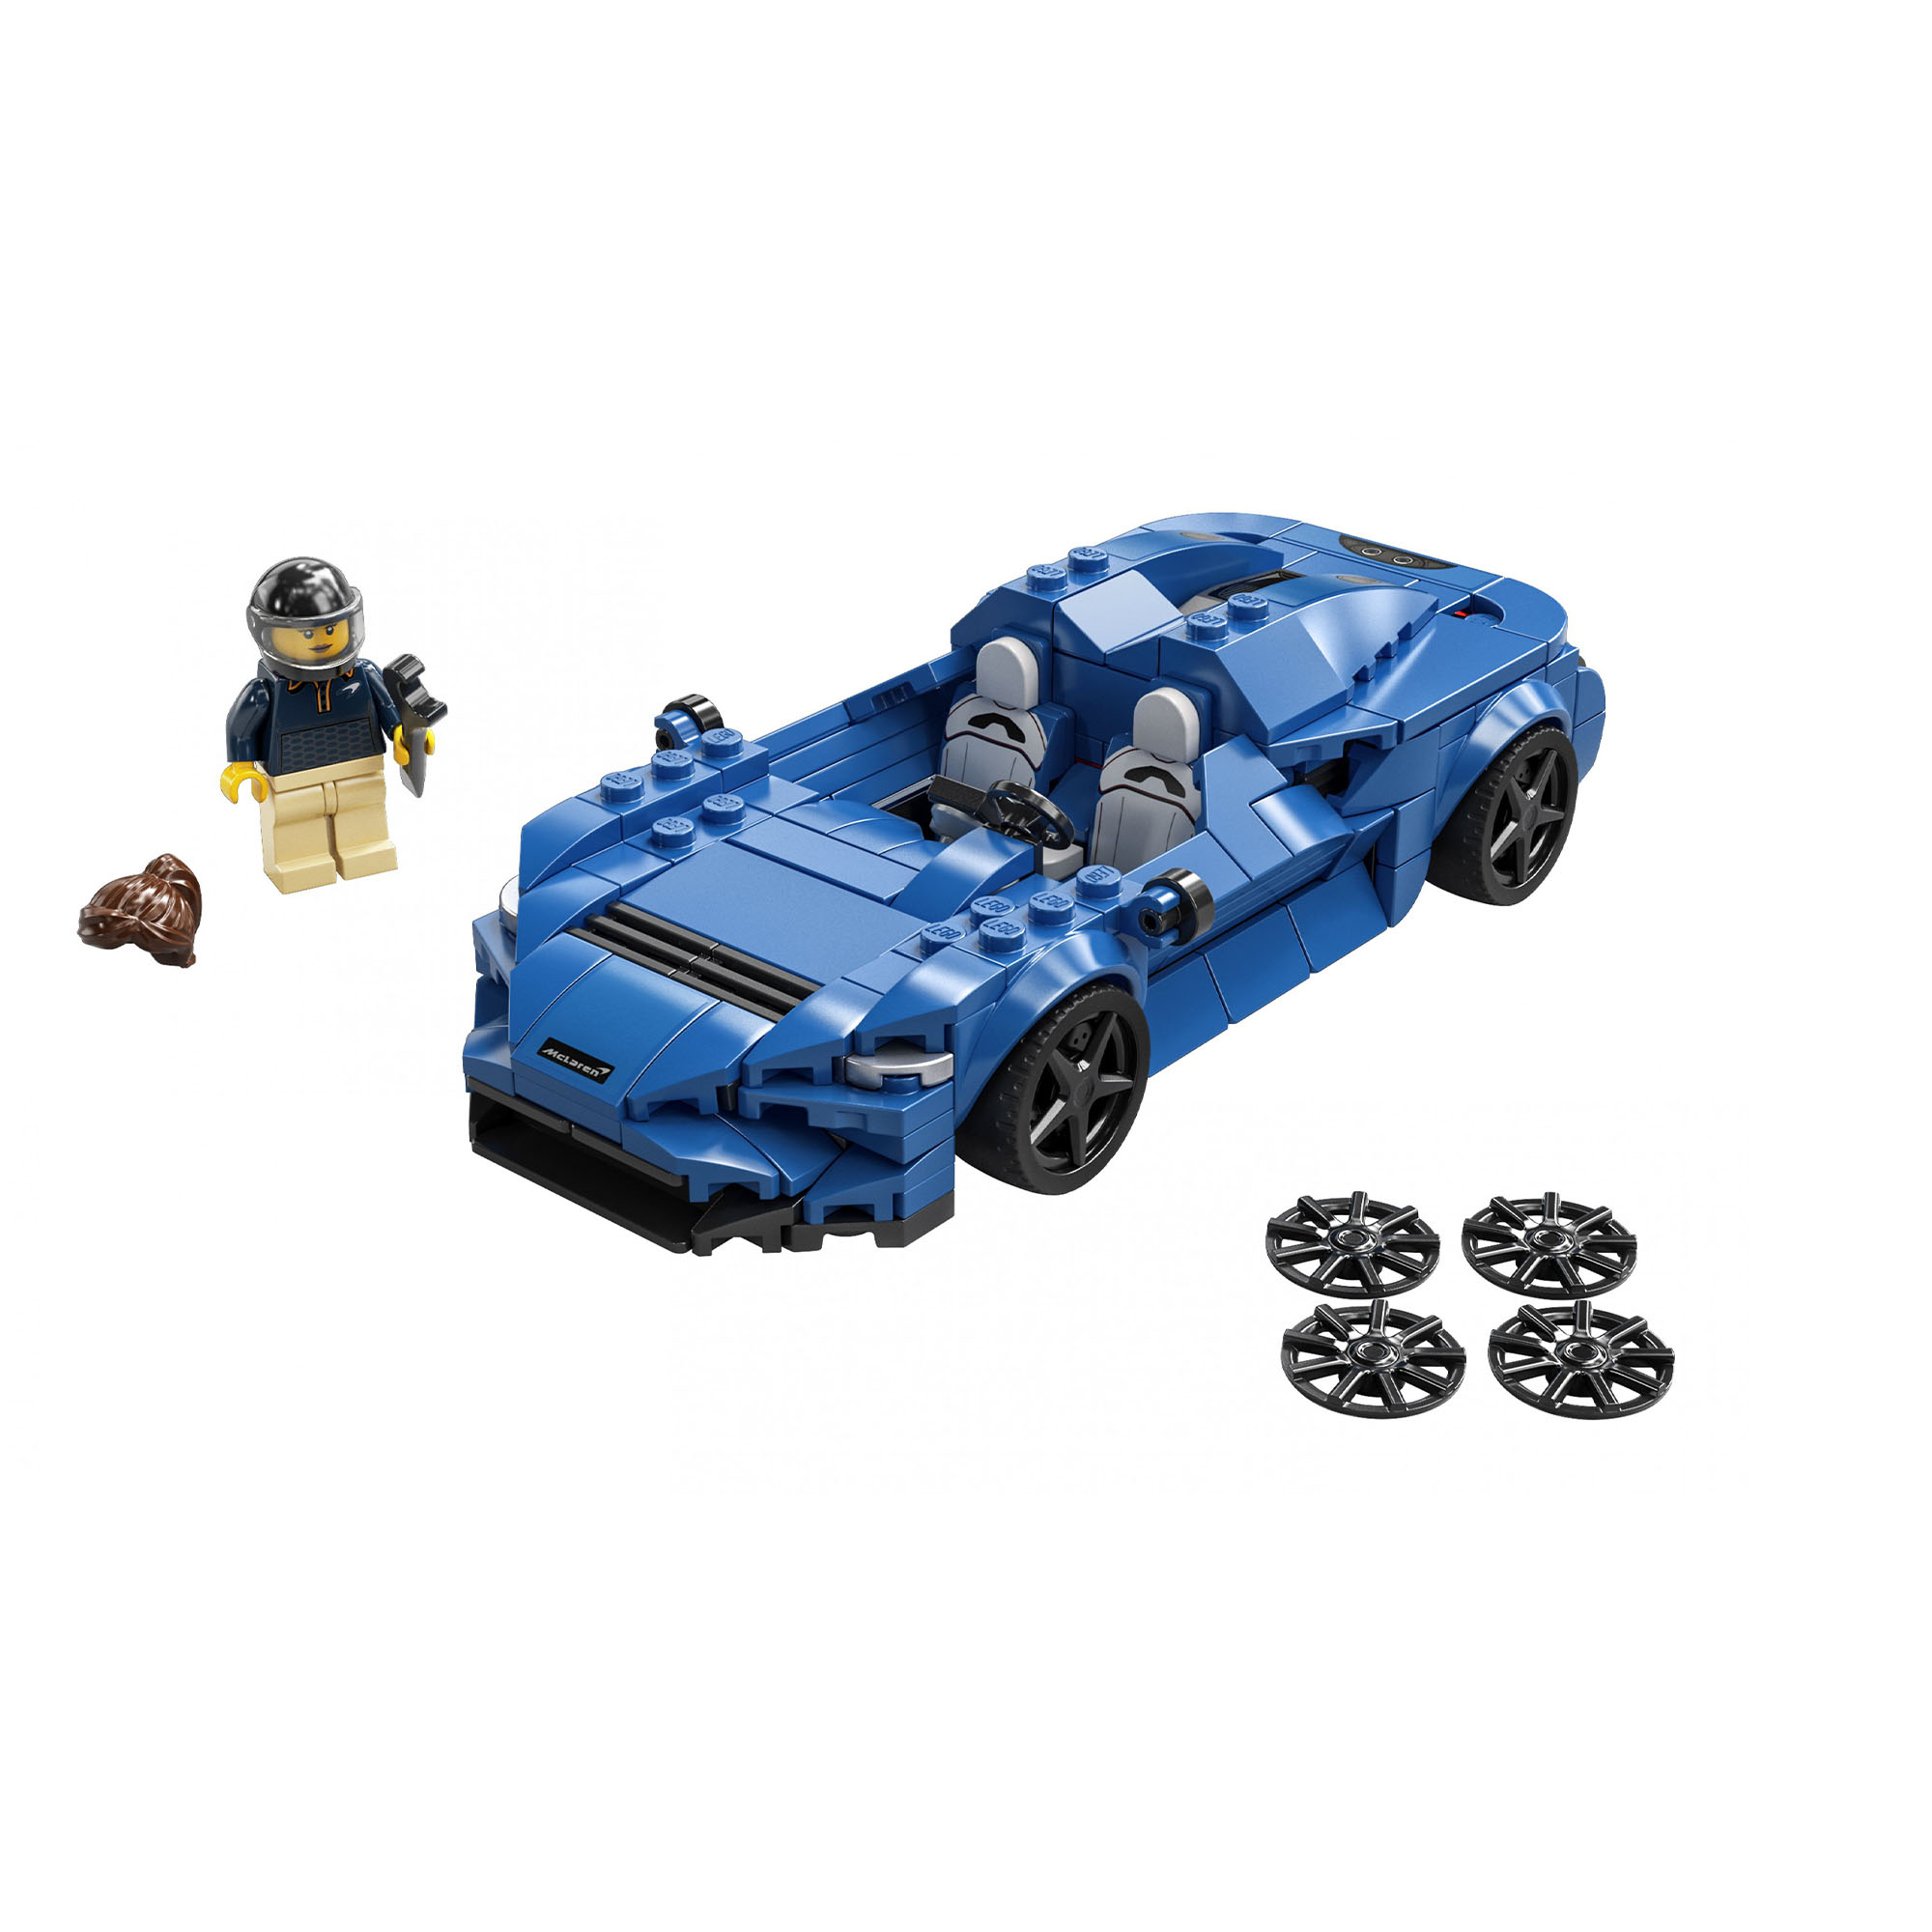 LEGO Speed Champions McLaren Elva, Macchina Giocattolo per Bambini di 7 Anni, Au 76902, , large